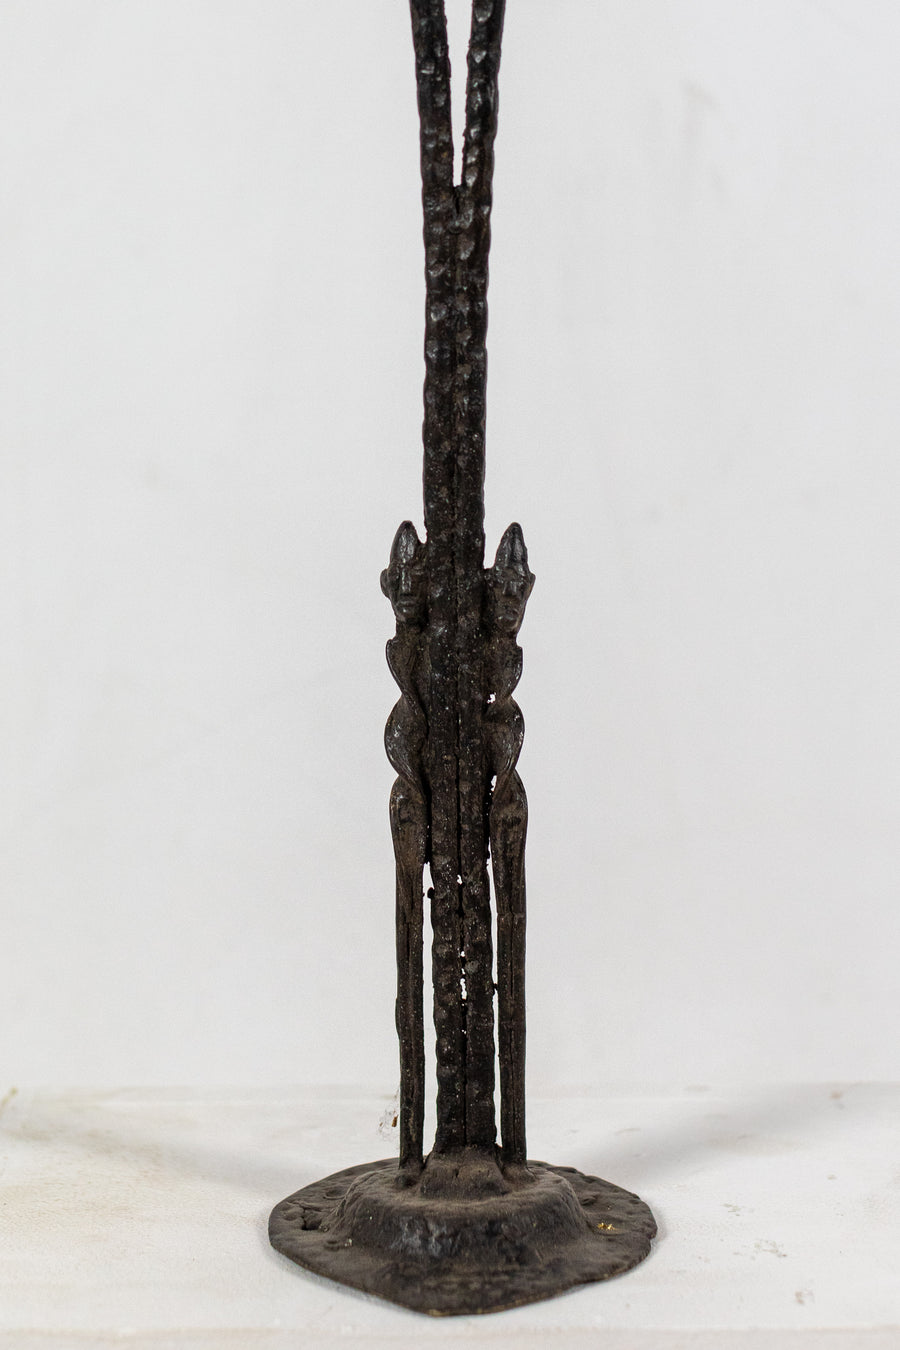 Escultura pareja Bafoulabé entorchada - País: Mali (Dogón)  Material: Aleación de bronce  Medidas: 11X11X107cm